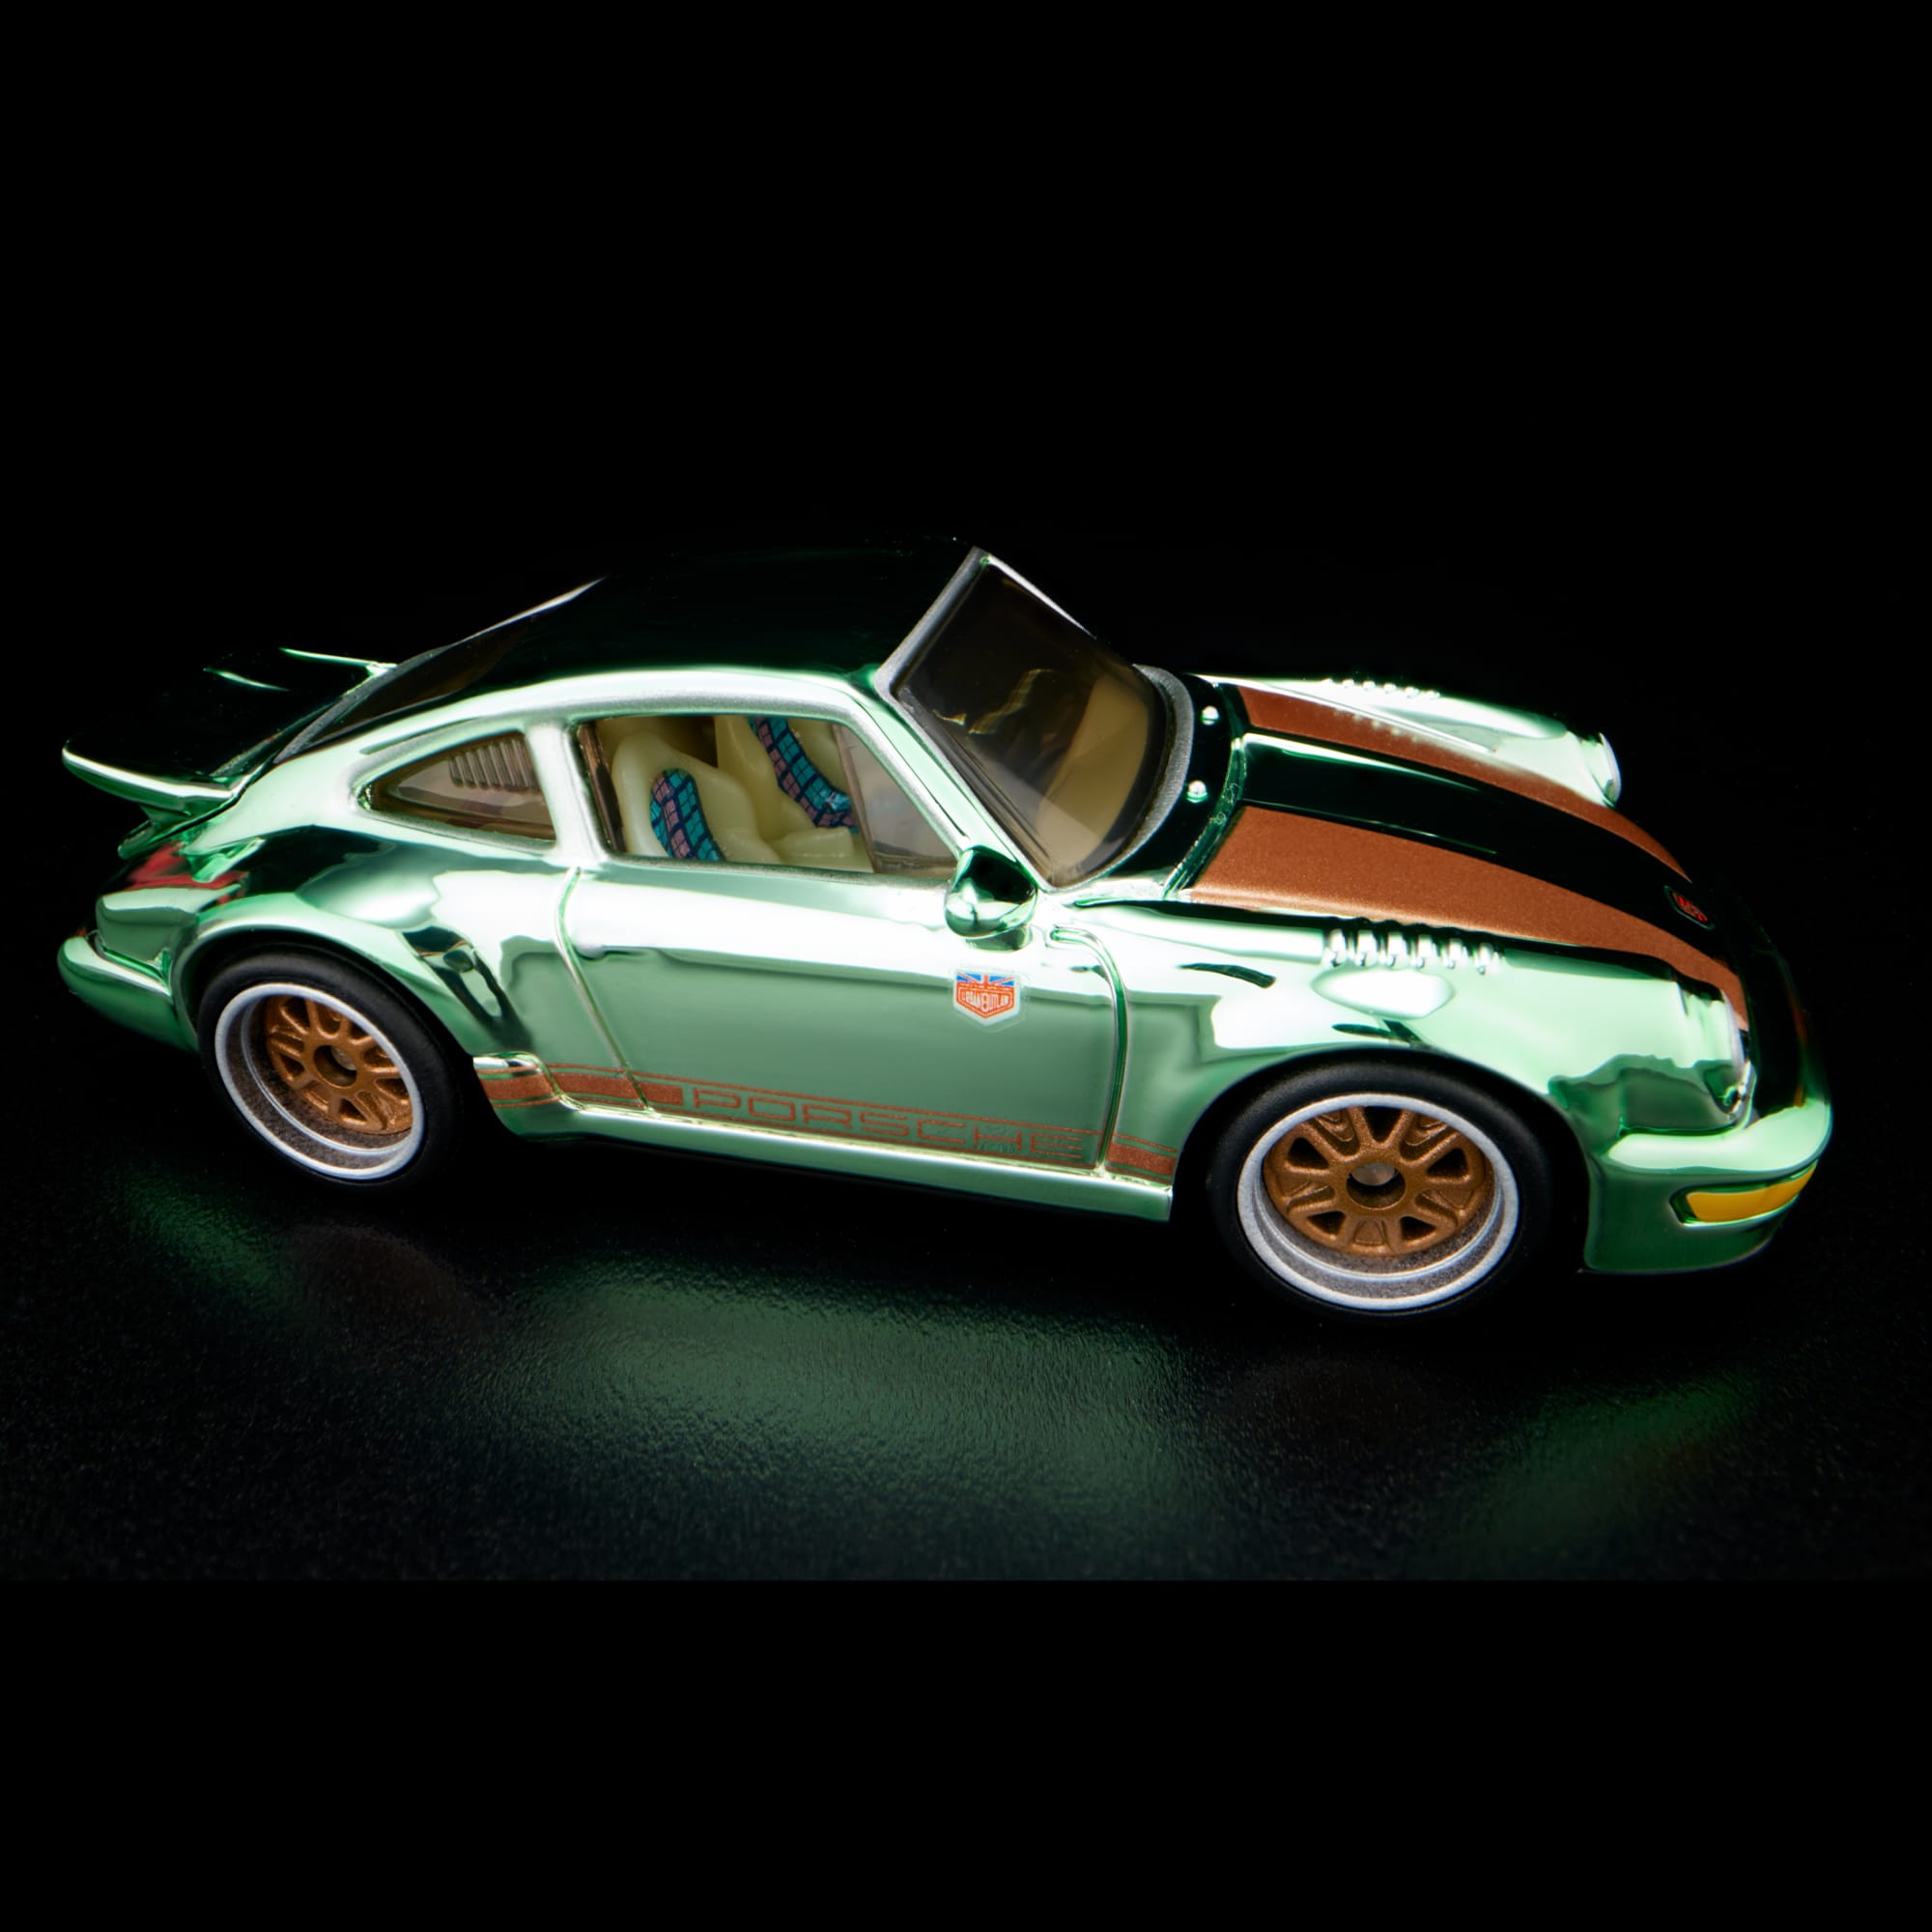 RLC Exclusive Magnus Walker “Urban Outlaw” Porsche 964